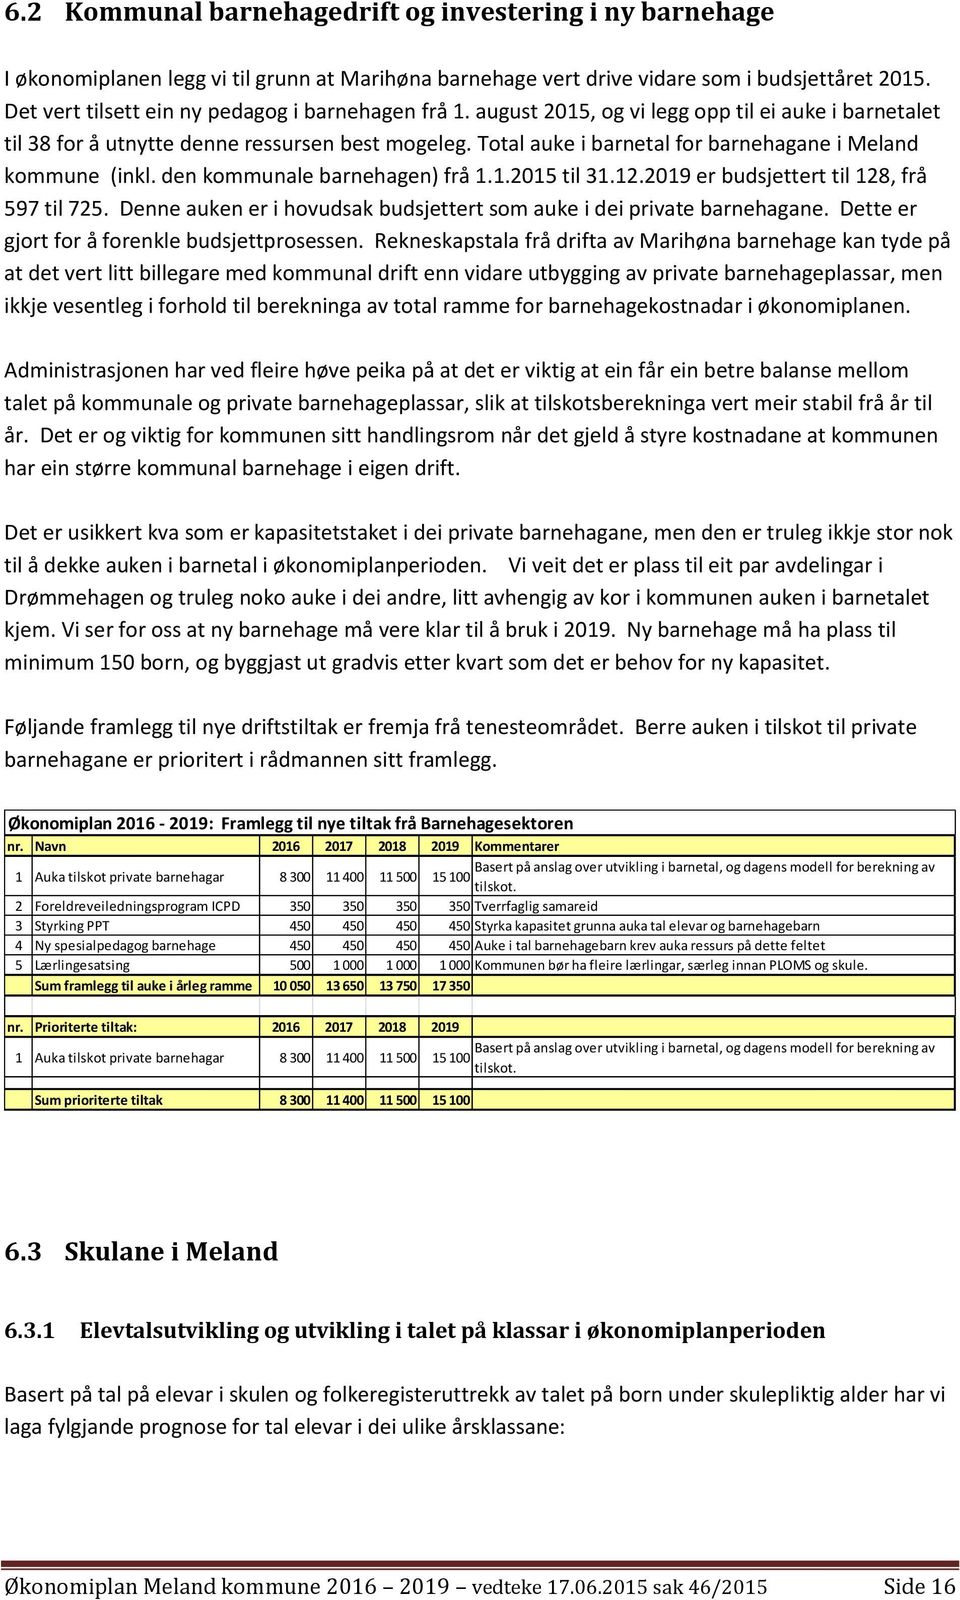 Total auke i barnetal for barnehagane i Meland kommune (inkl. den kommunale barnehagen) frå 1.1.2015 til 31.12.2019 er budsjettert til 128, frå 597 til 725.